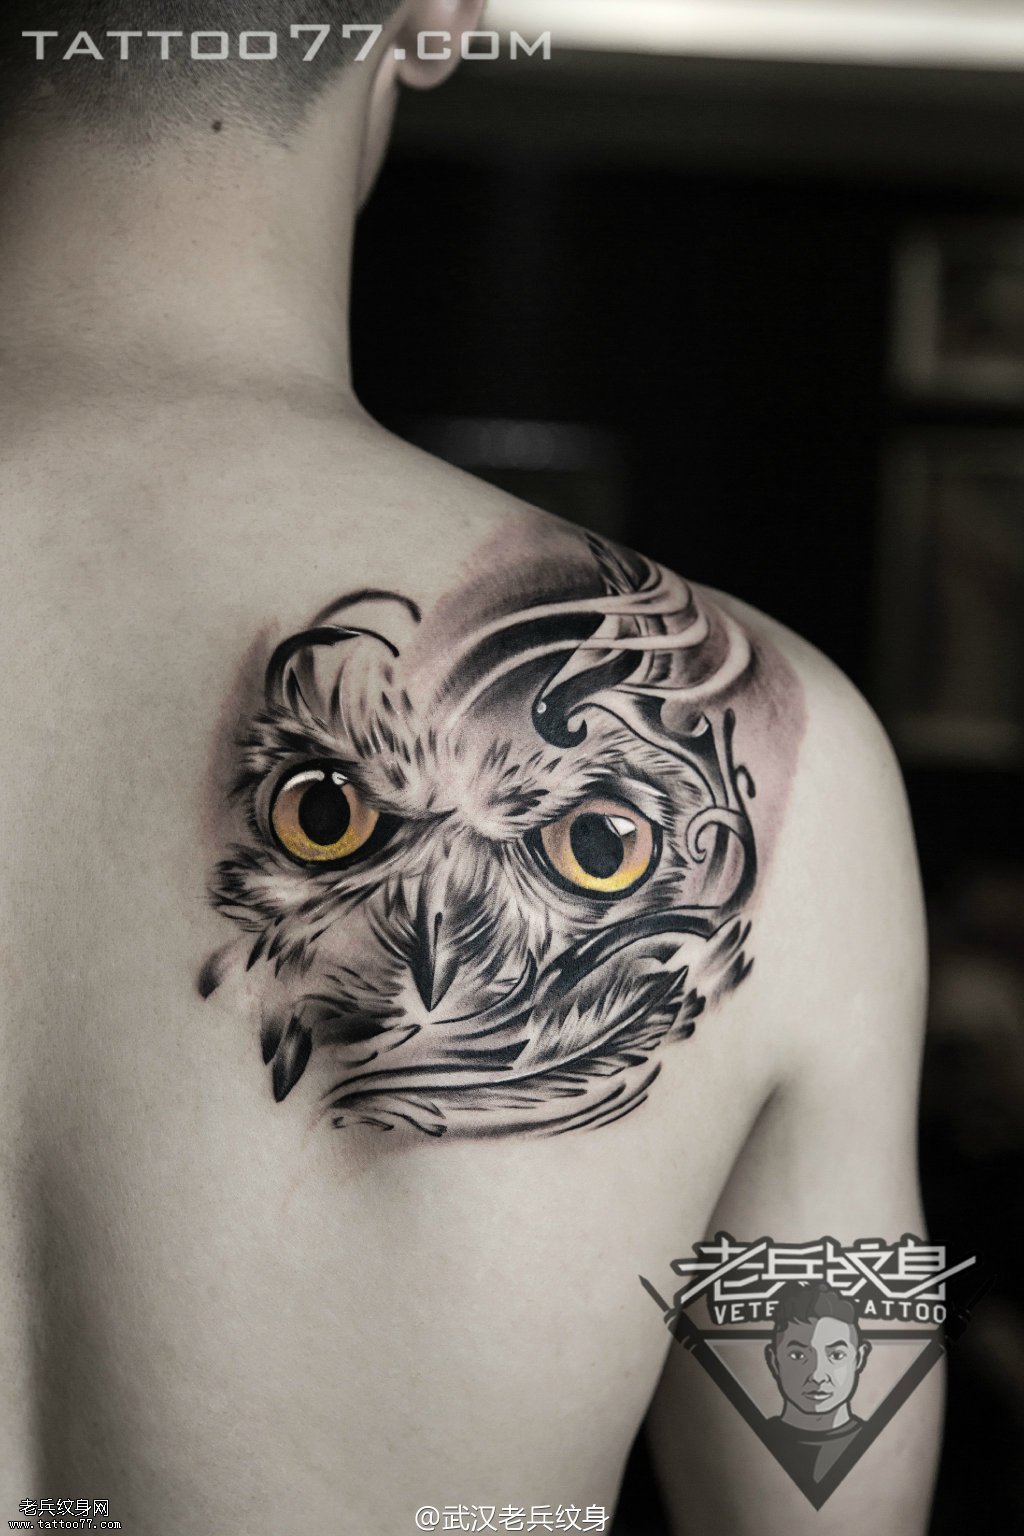 肩膀猫头鹰纹身图案作品